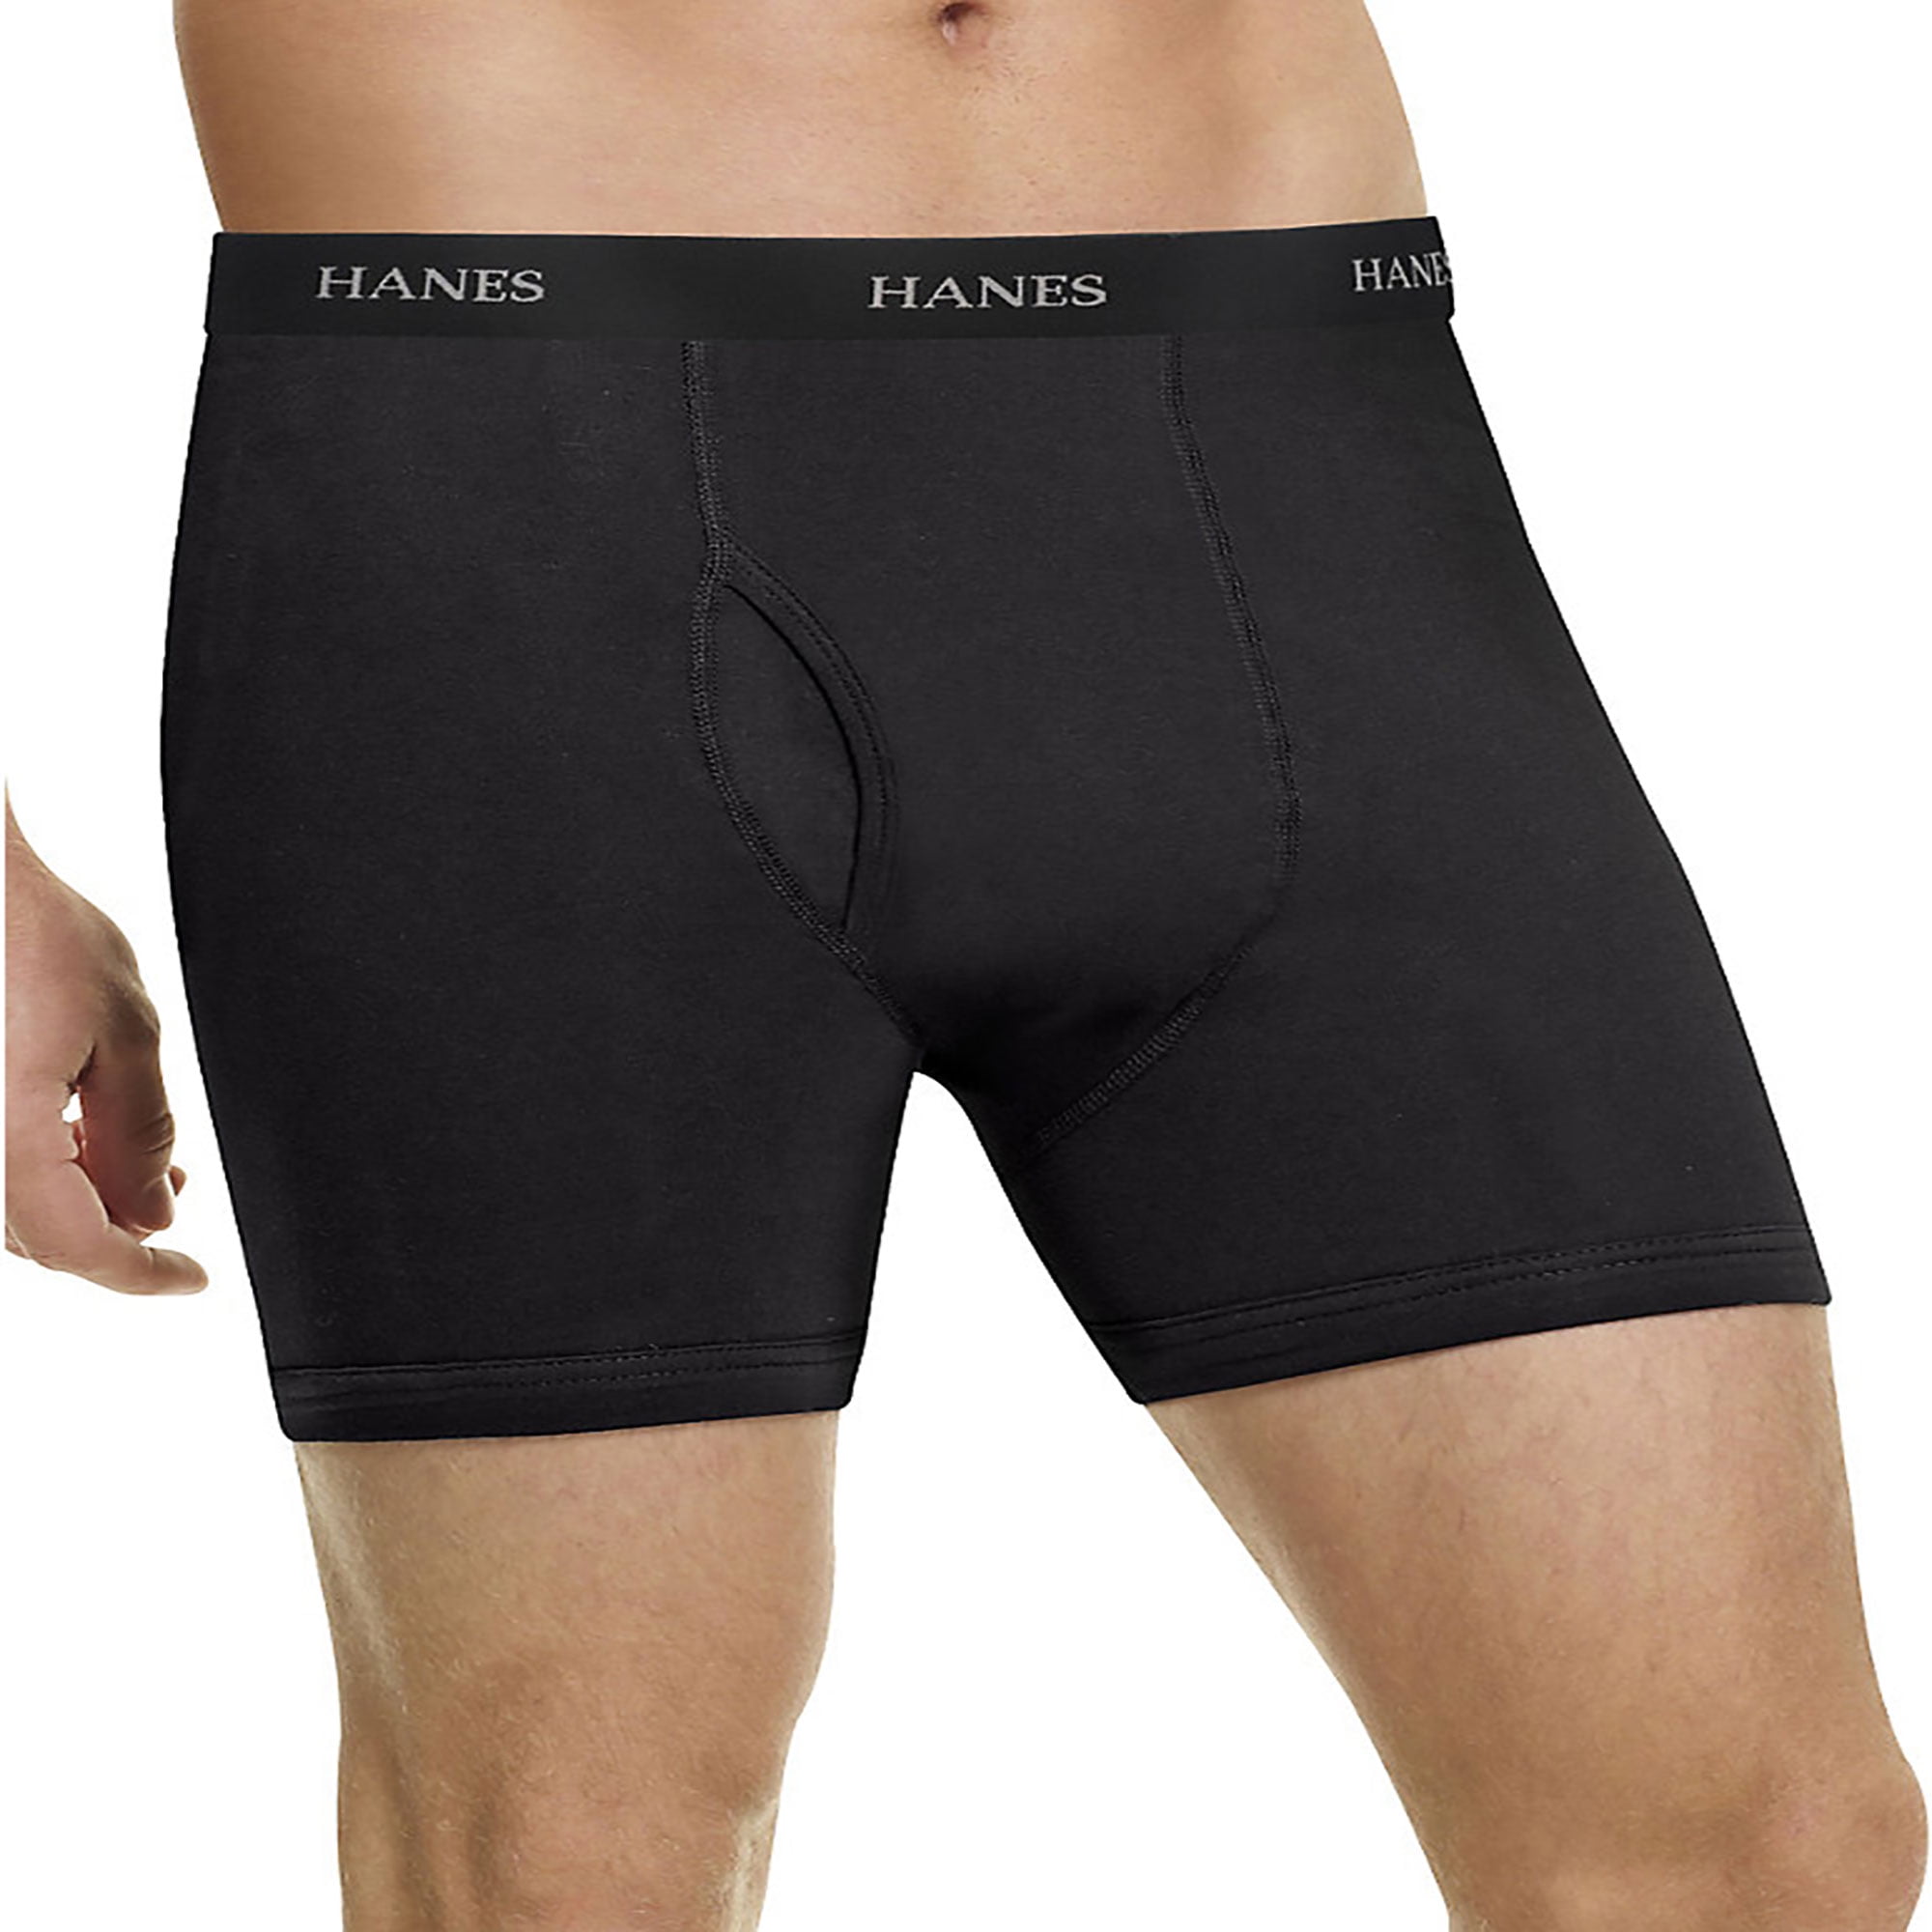 Hanes - Hanes Men's Long Leg Boxer Briefs Comfort Flex Waistband 5-Pack ...